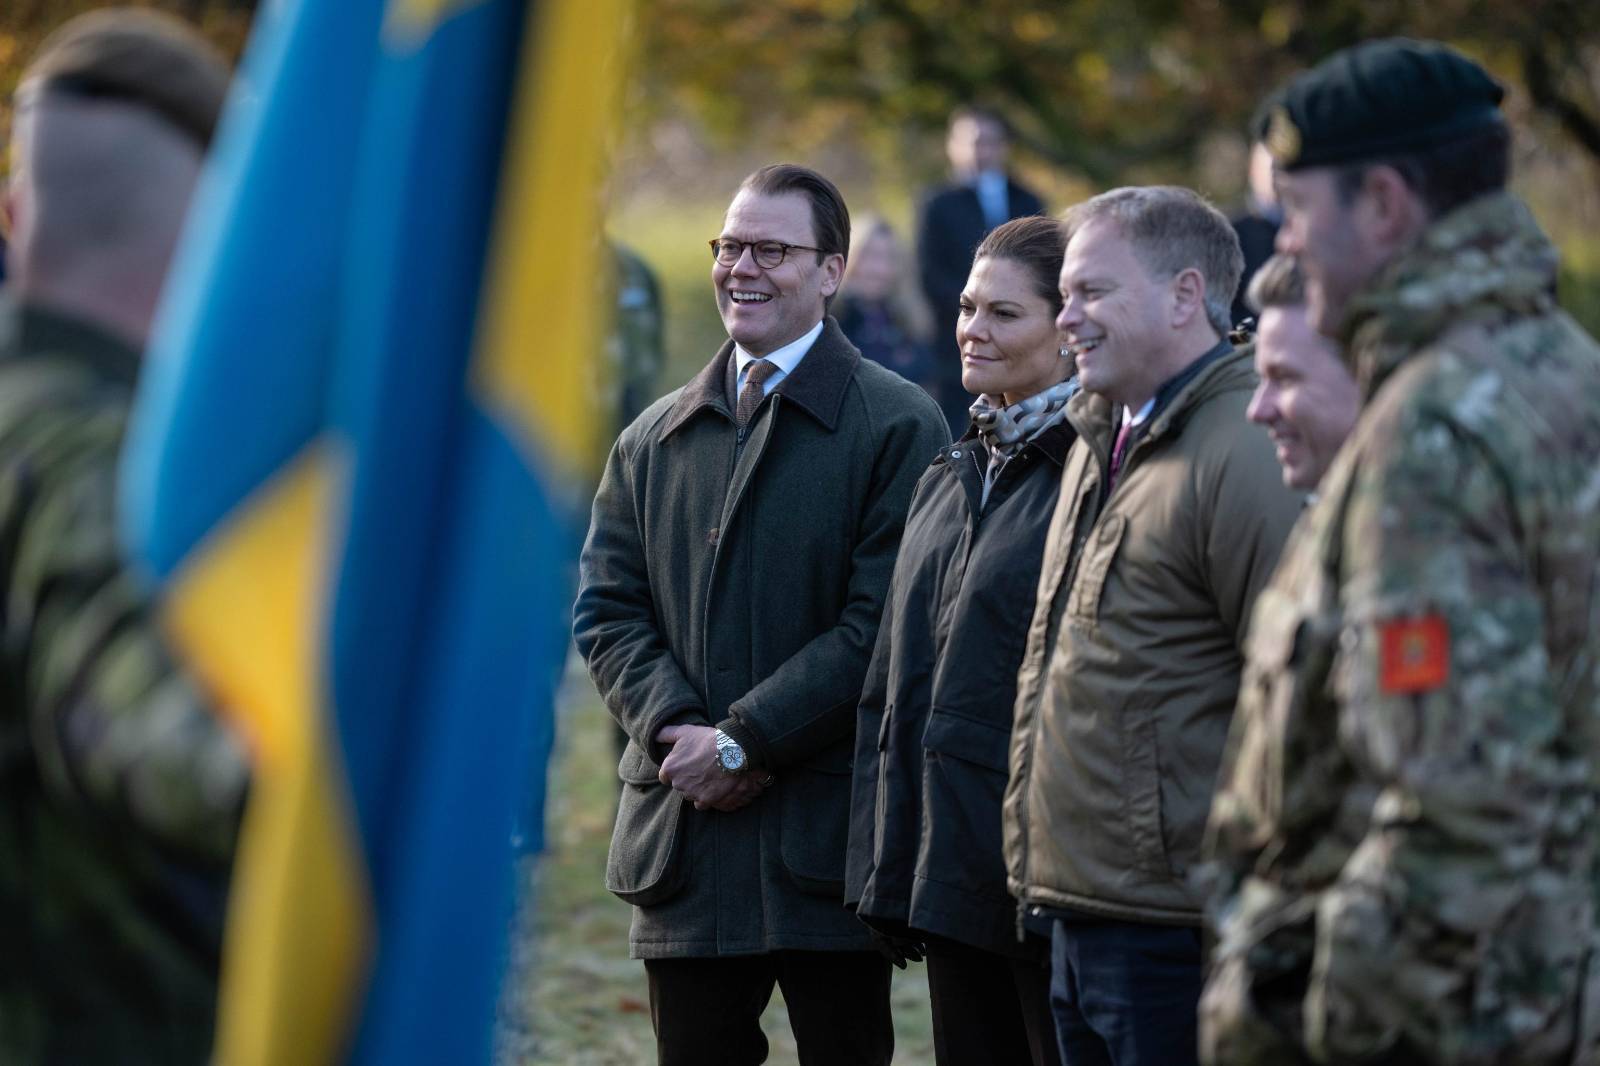 Принцеса Швеції відвідала українських військових на навчаннях у Великій Британії. Фото